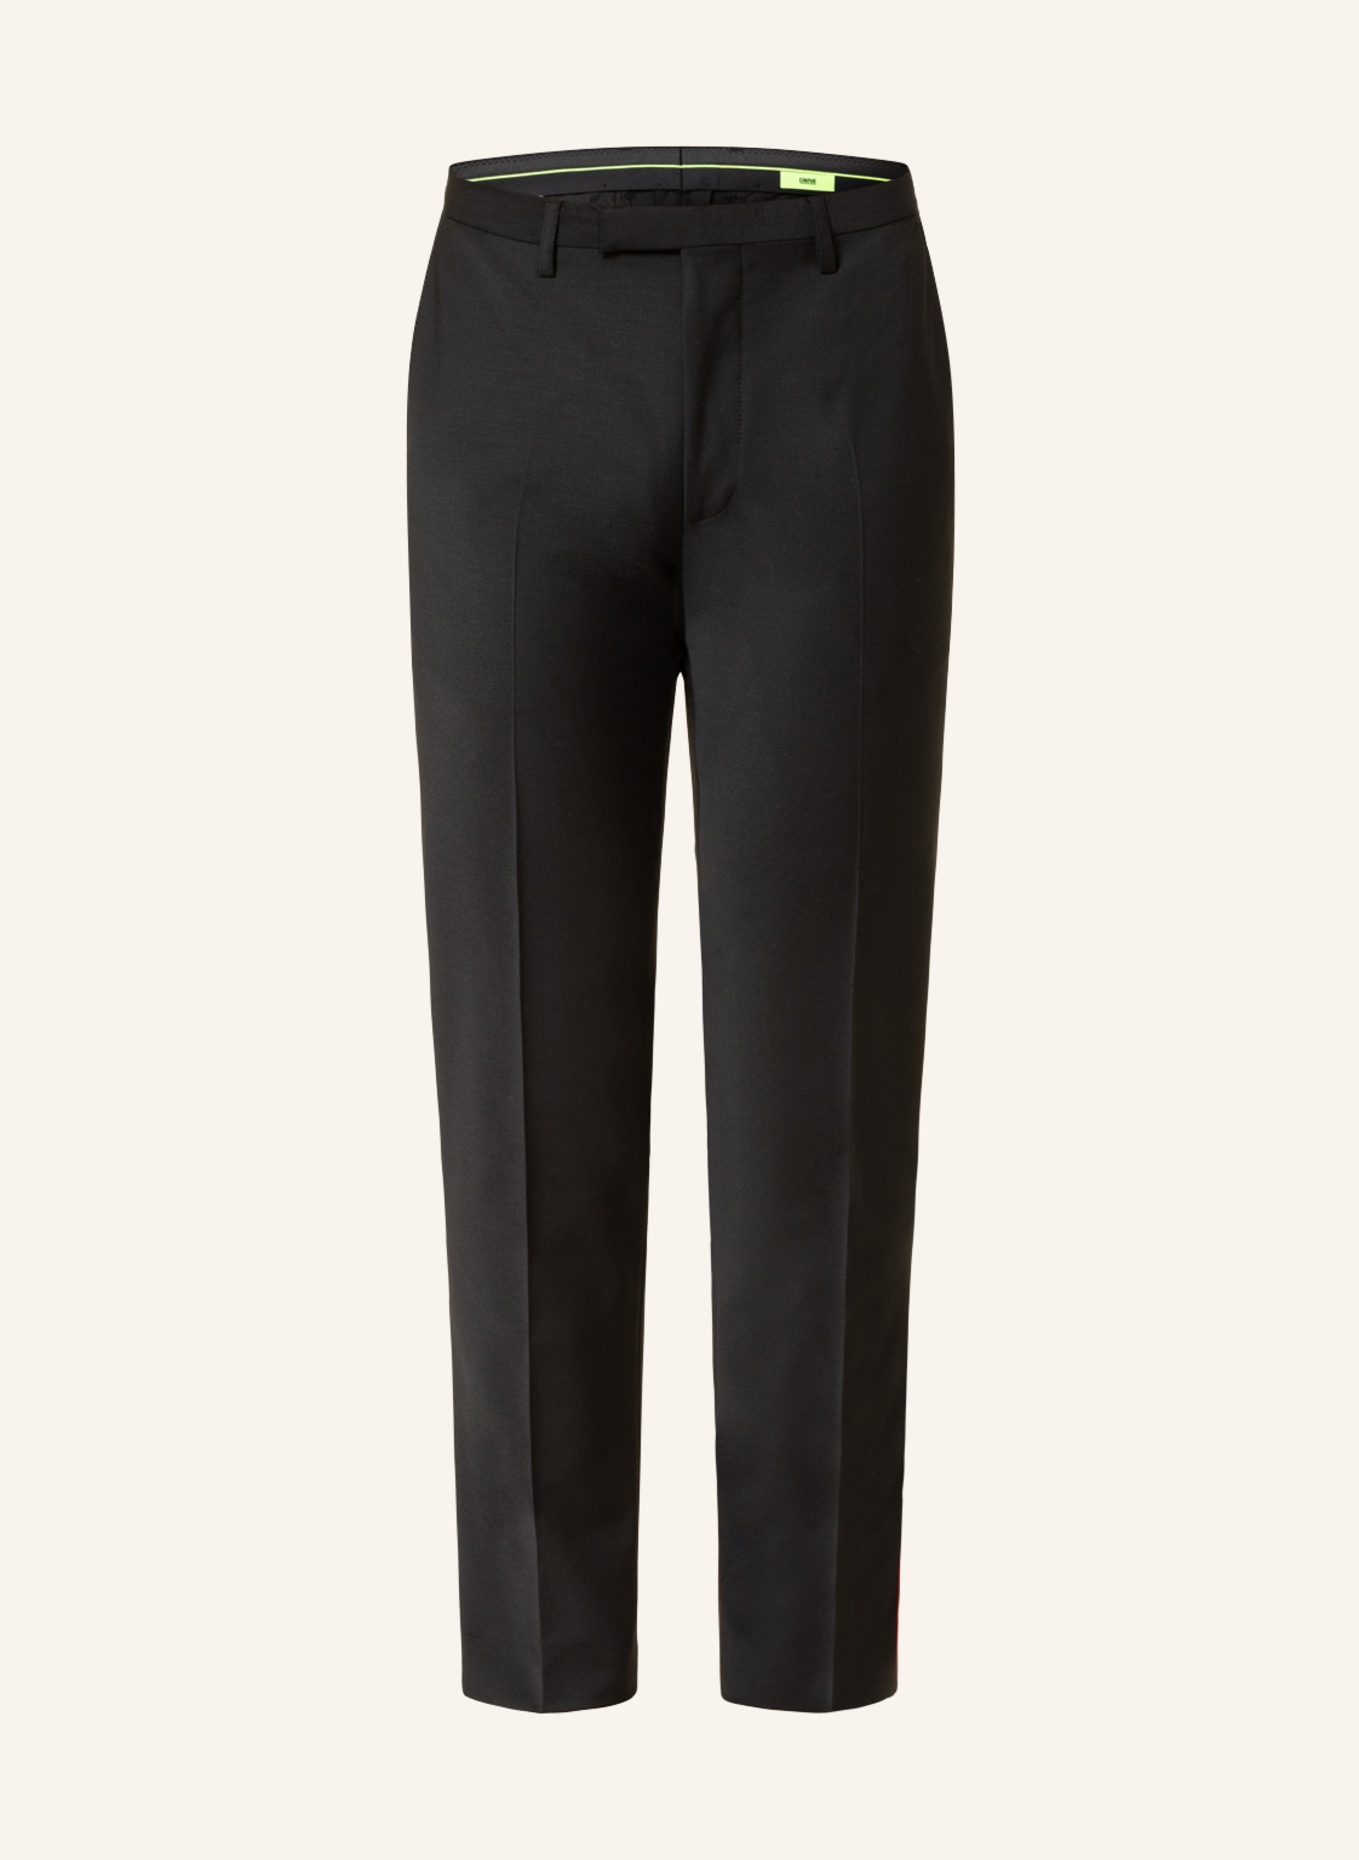 CINQUE Suit trousers CICASTELLO super slim fit, Color: 99 (Image 1)